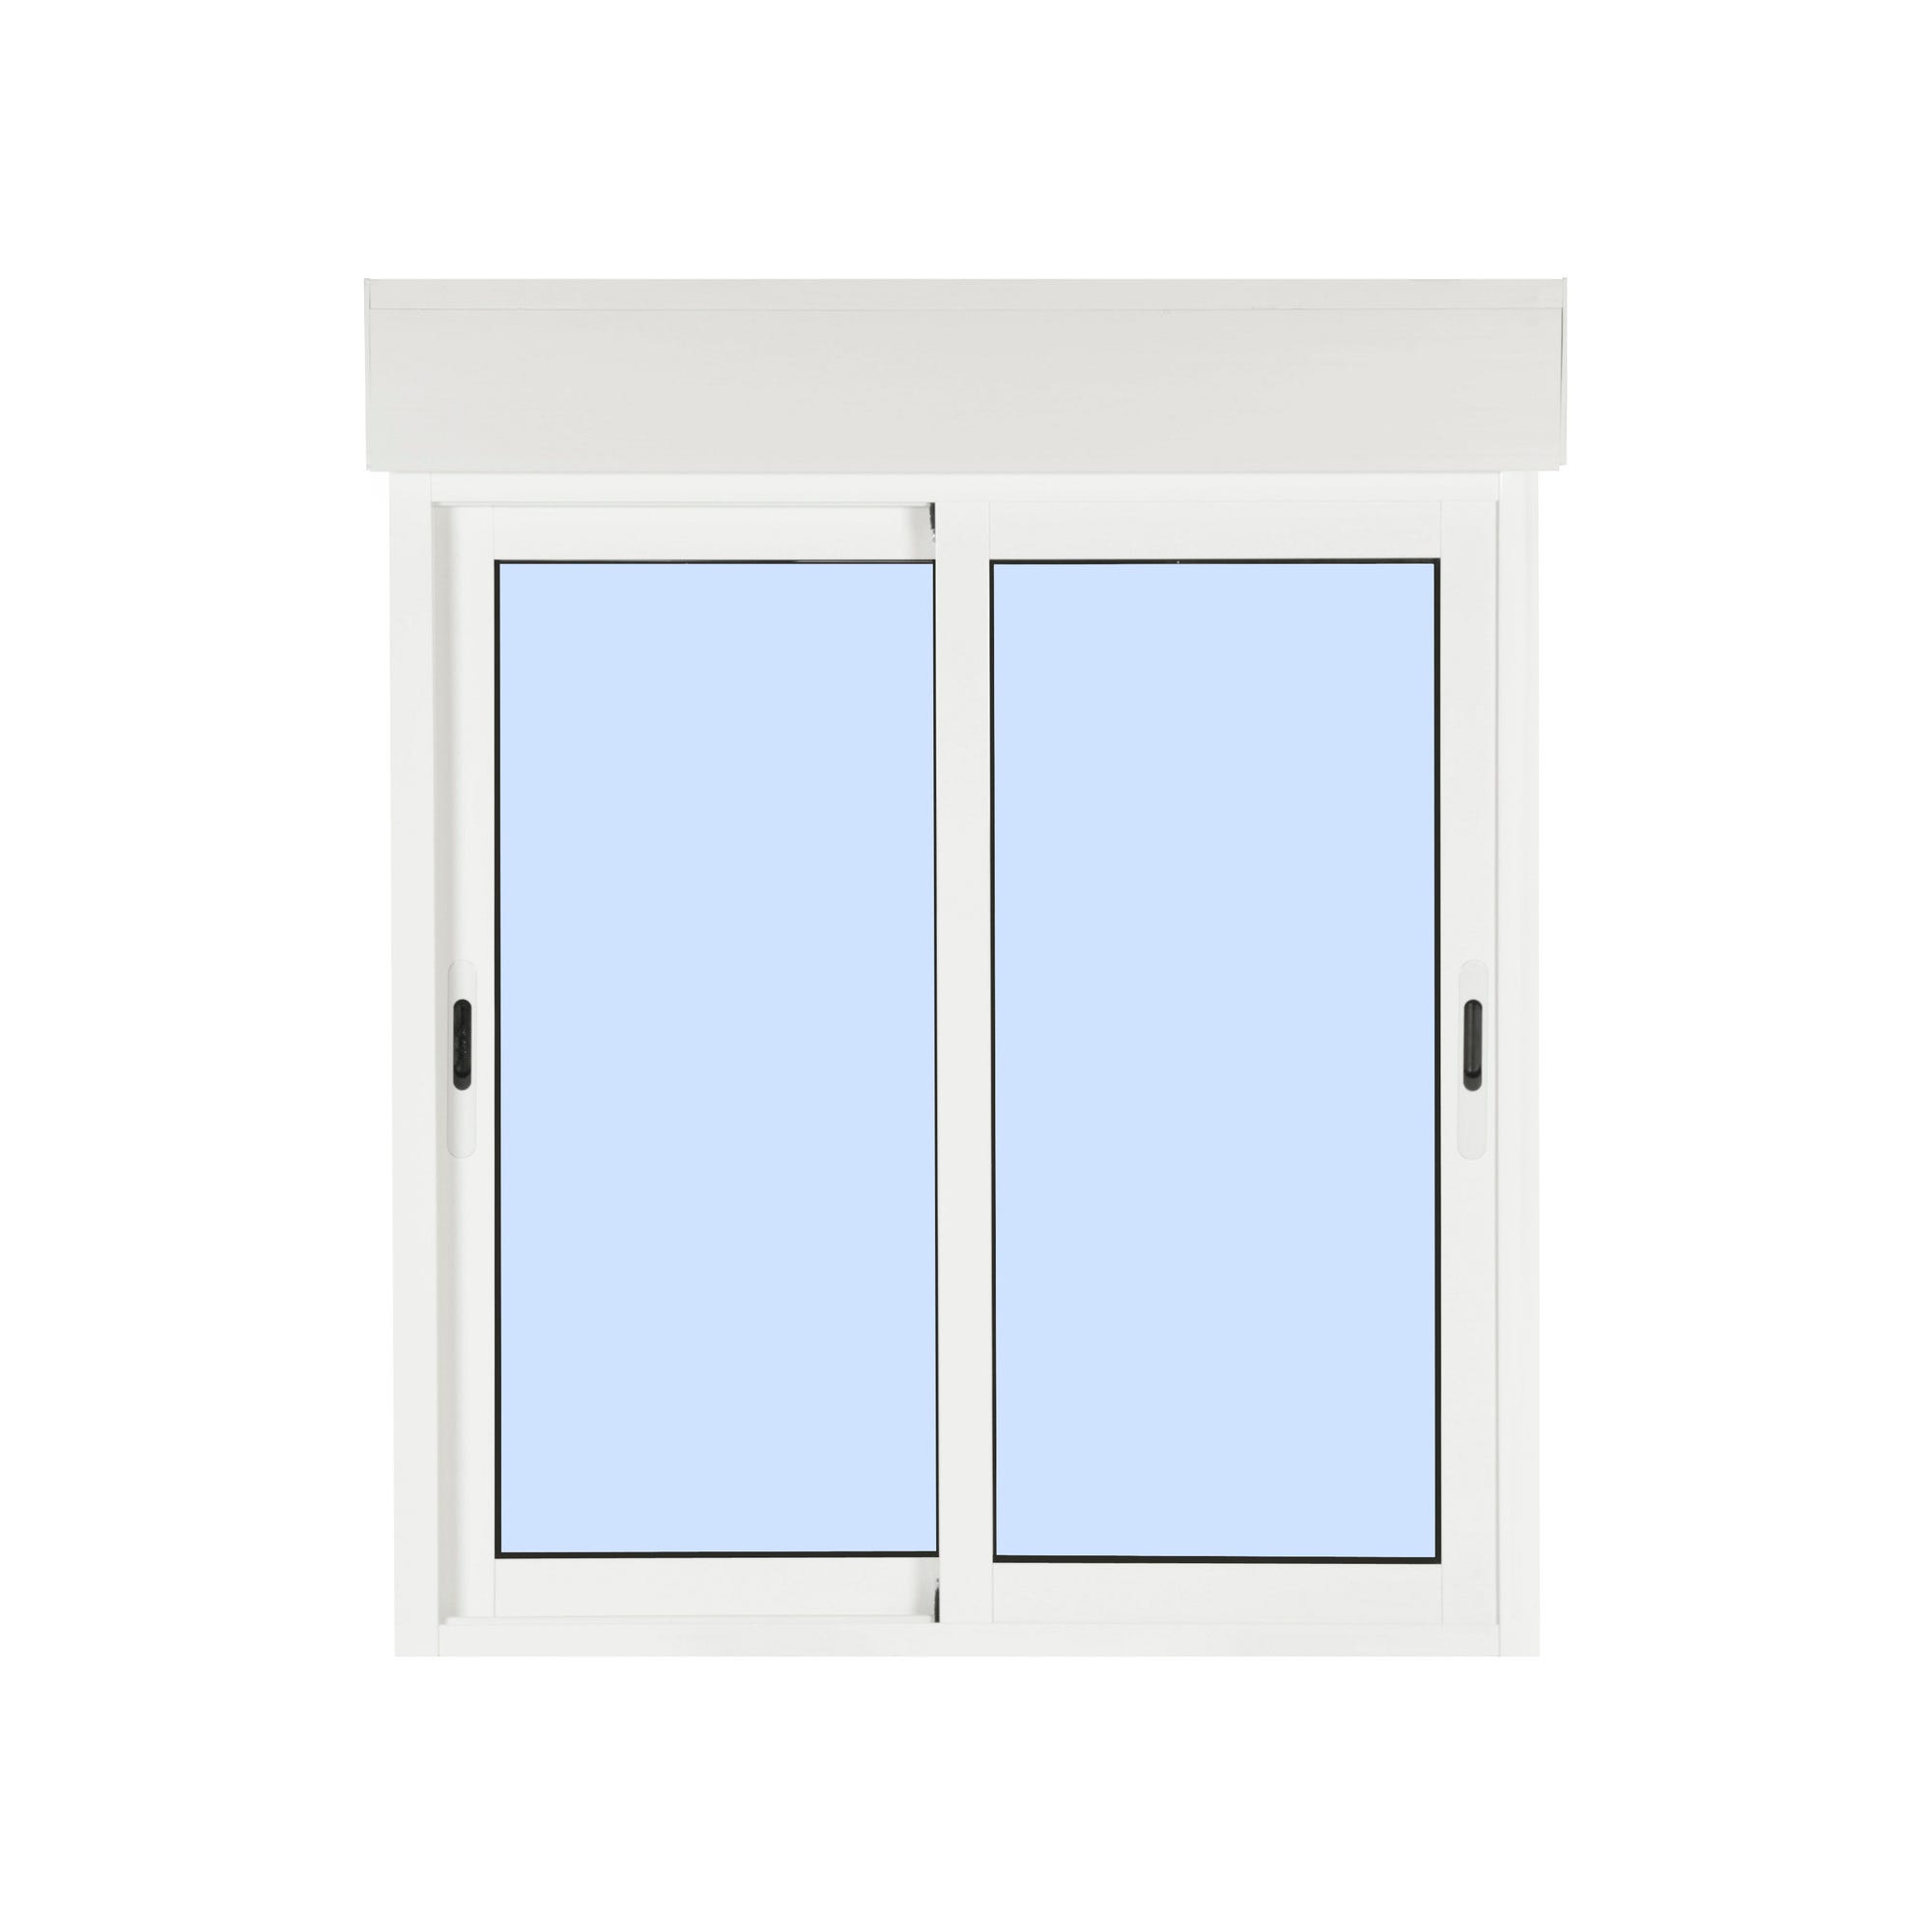 Fenêtre aluminium H.125 x l.120 cm coulissant 2 vantaux avec volet roulant intégré blanc 2